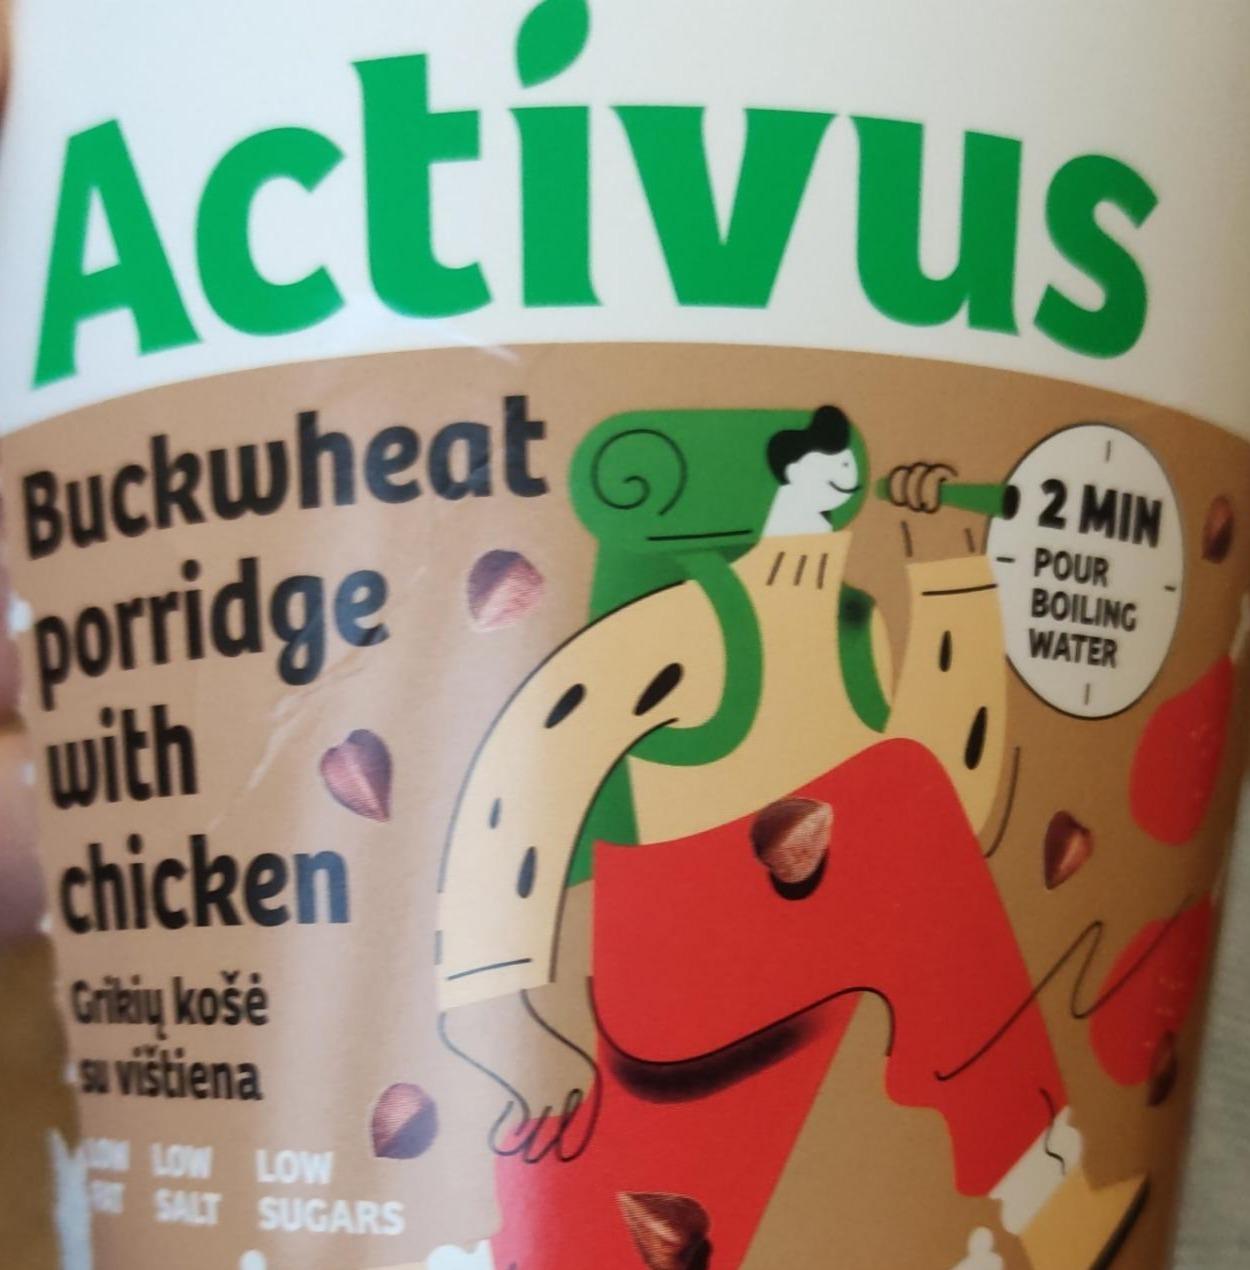 Фото - Bucrwheat porridge with chicken Activus